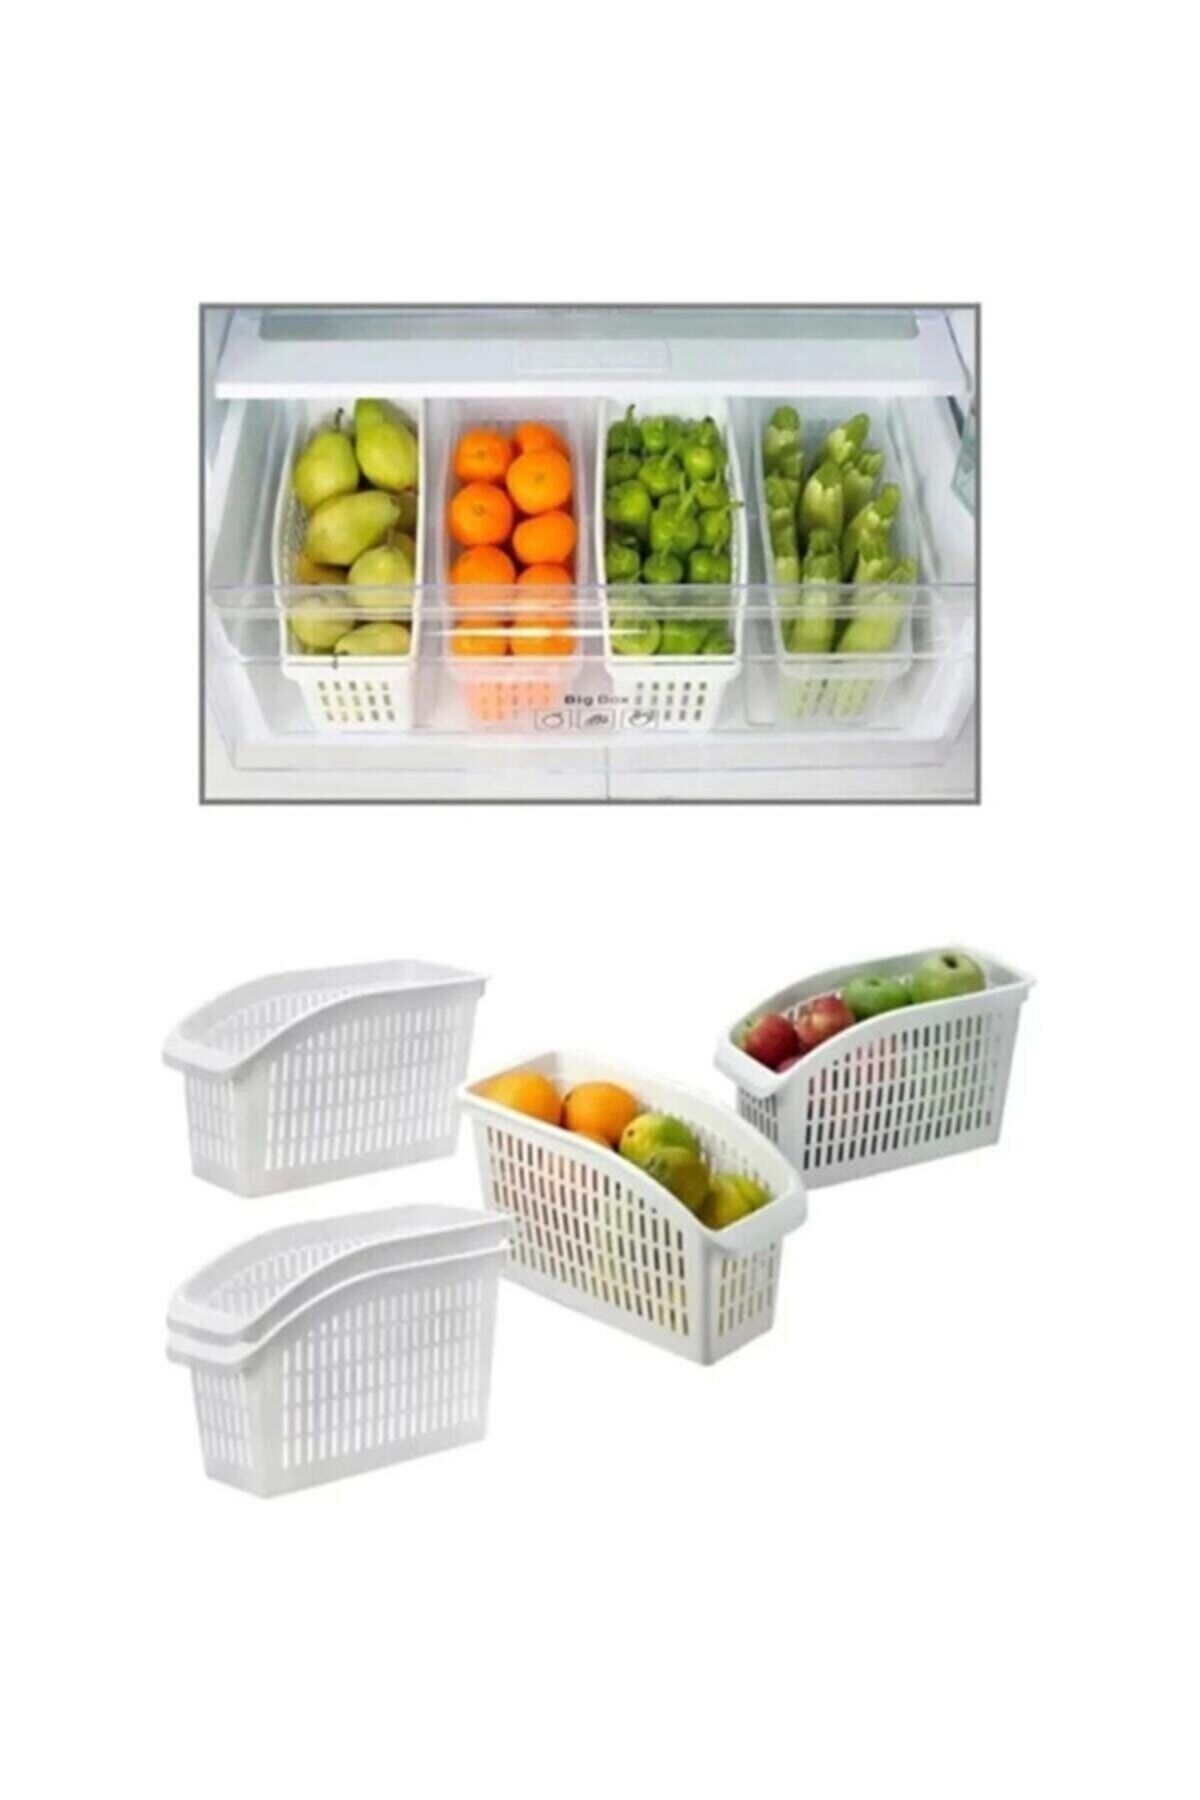 Genel Markalar Mka Colectıon Meyve Sebze Buzdolabı Organizeri 4 Adet Ayd-